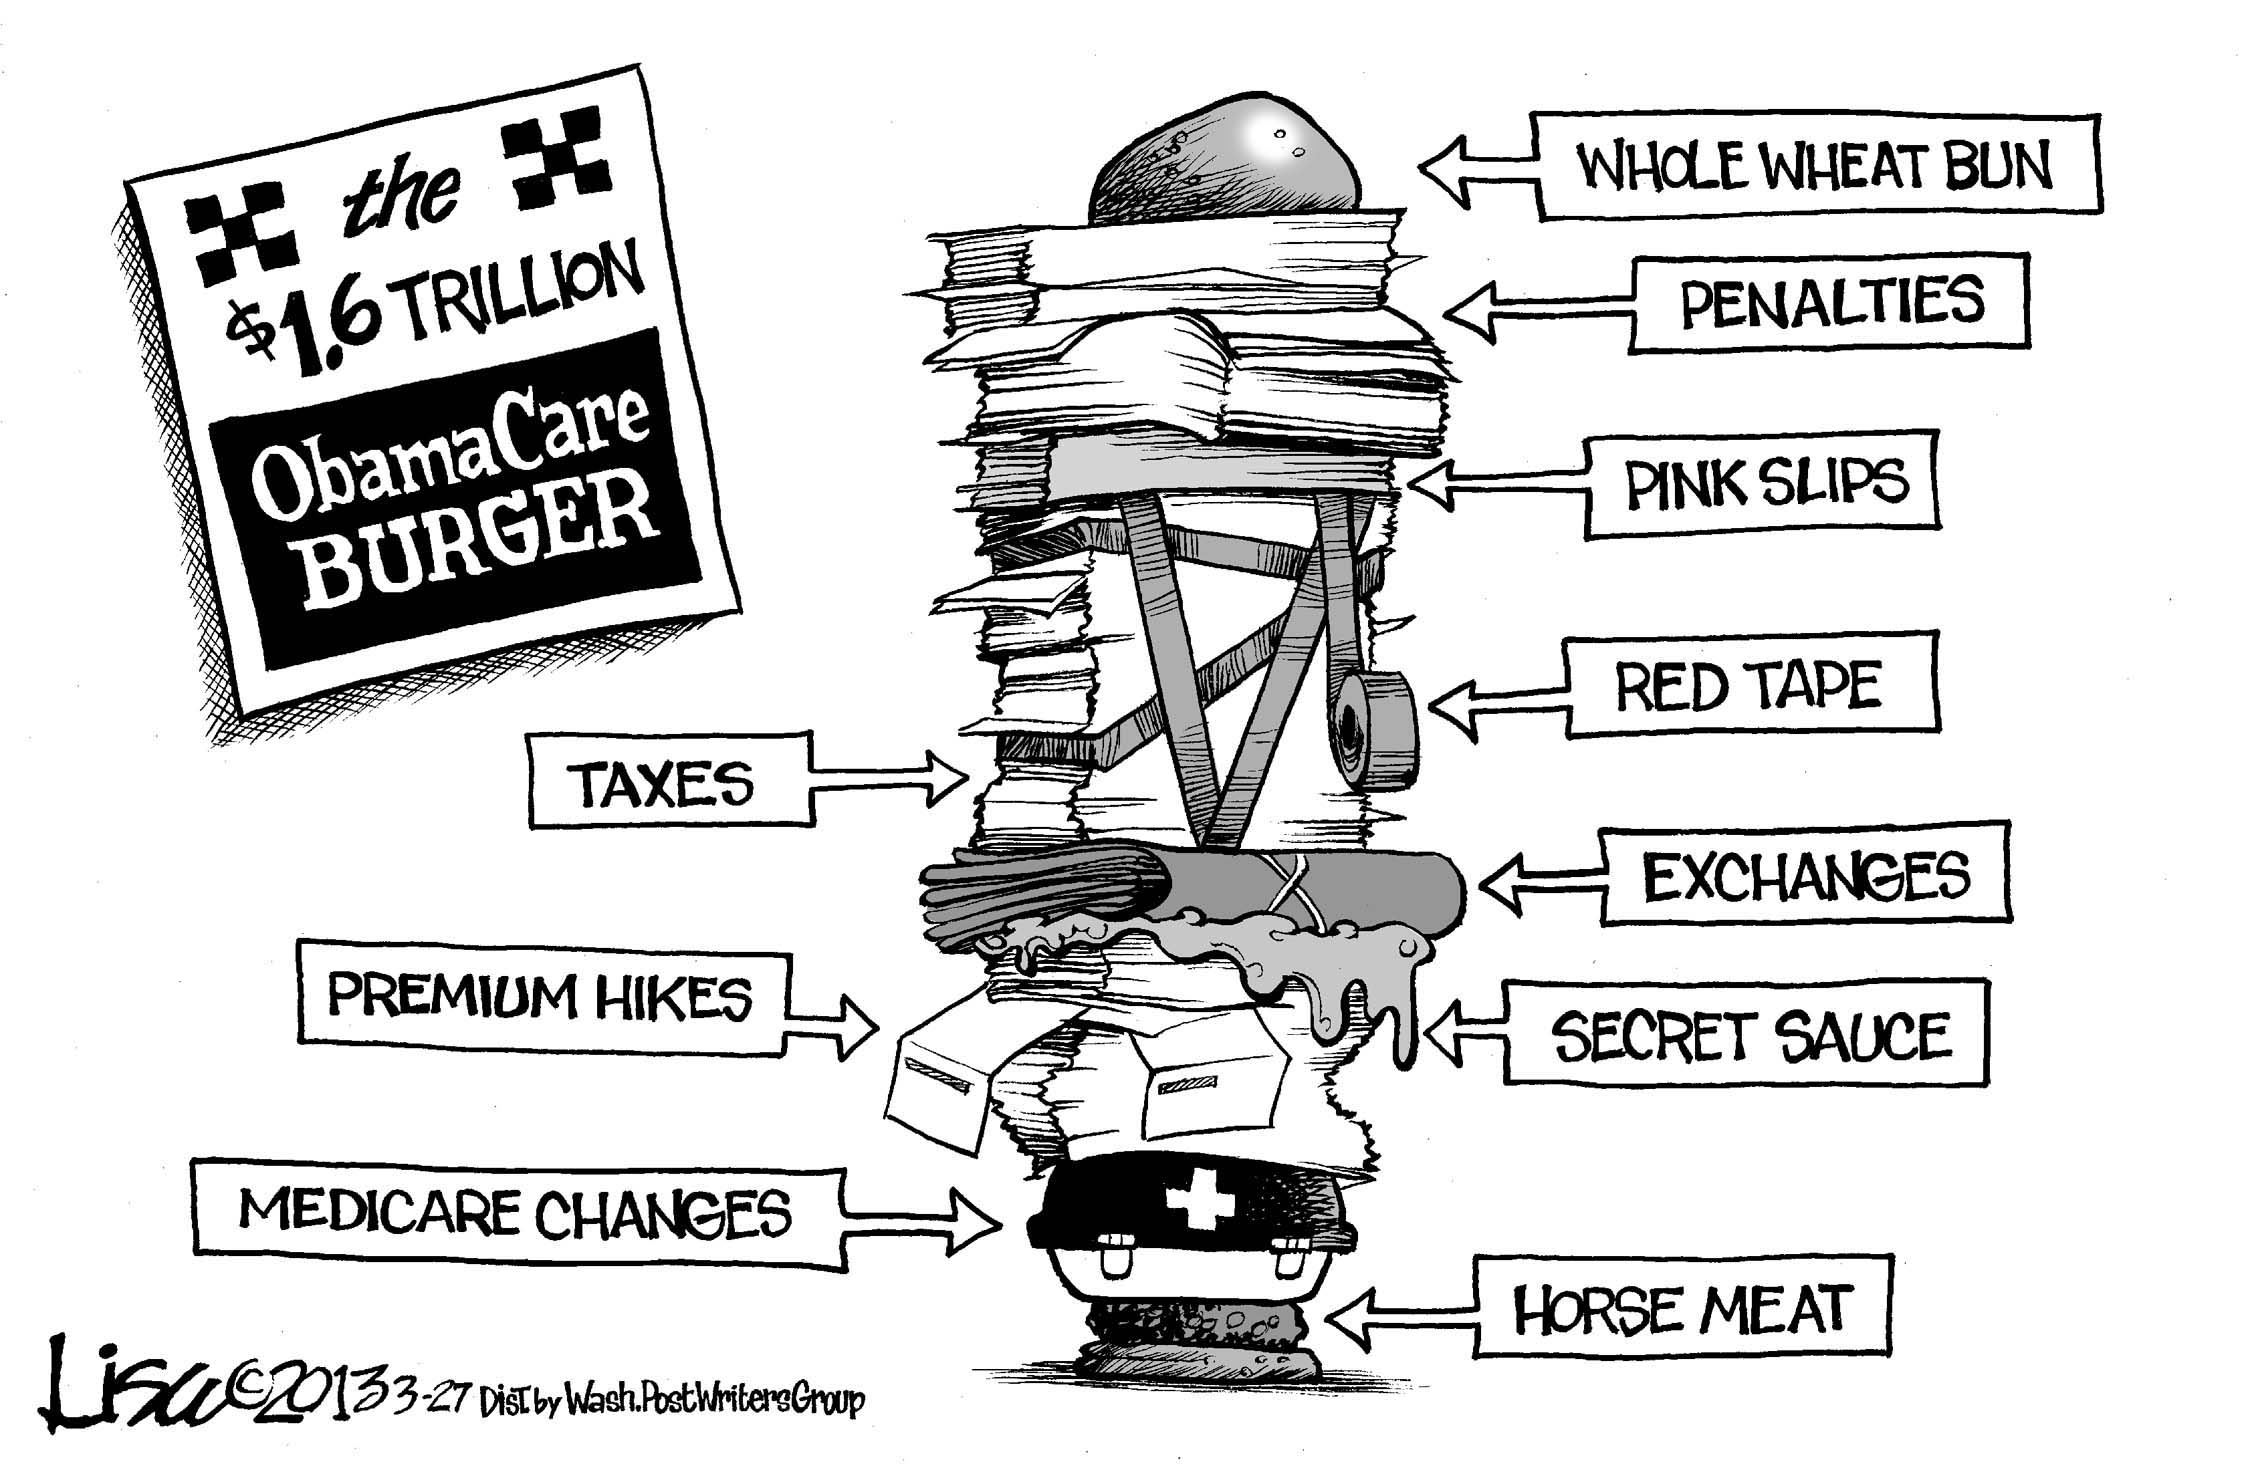 Obamacare Burger